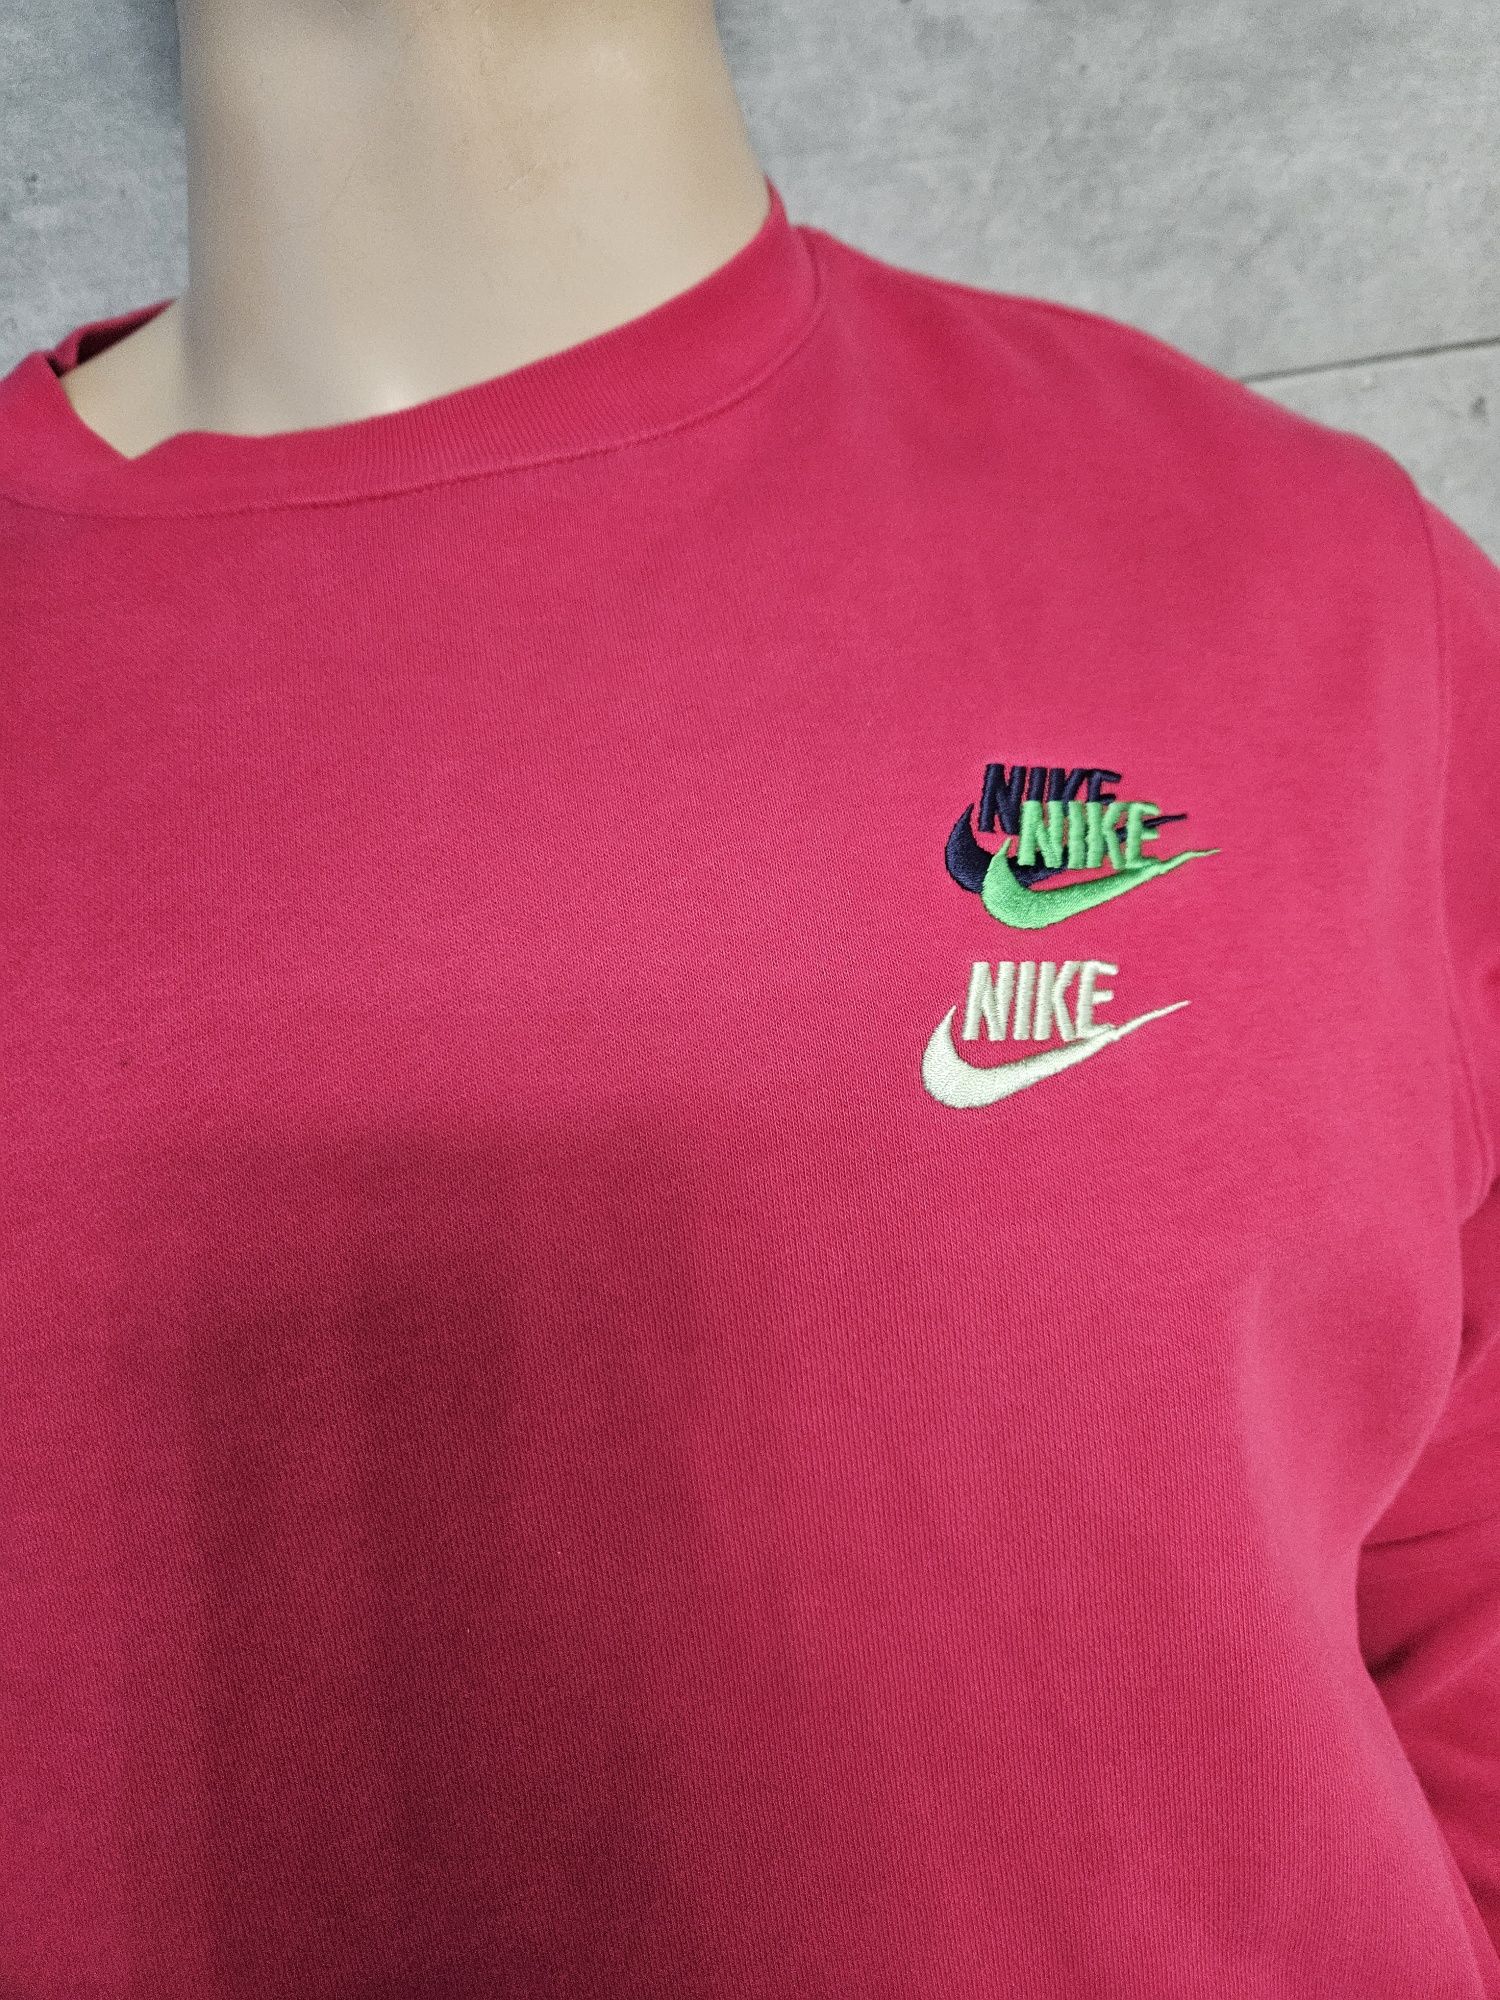 Bluza meska Nike różowa fuksja Oryginalna rozm M